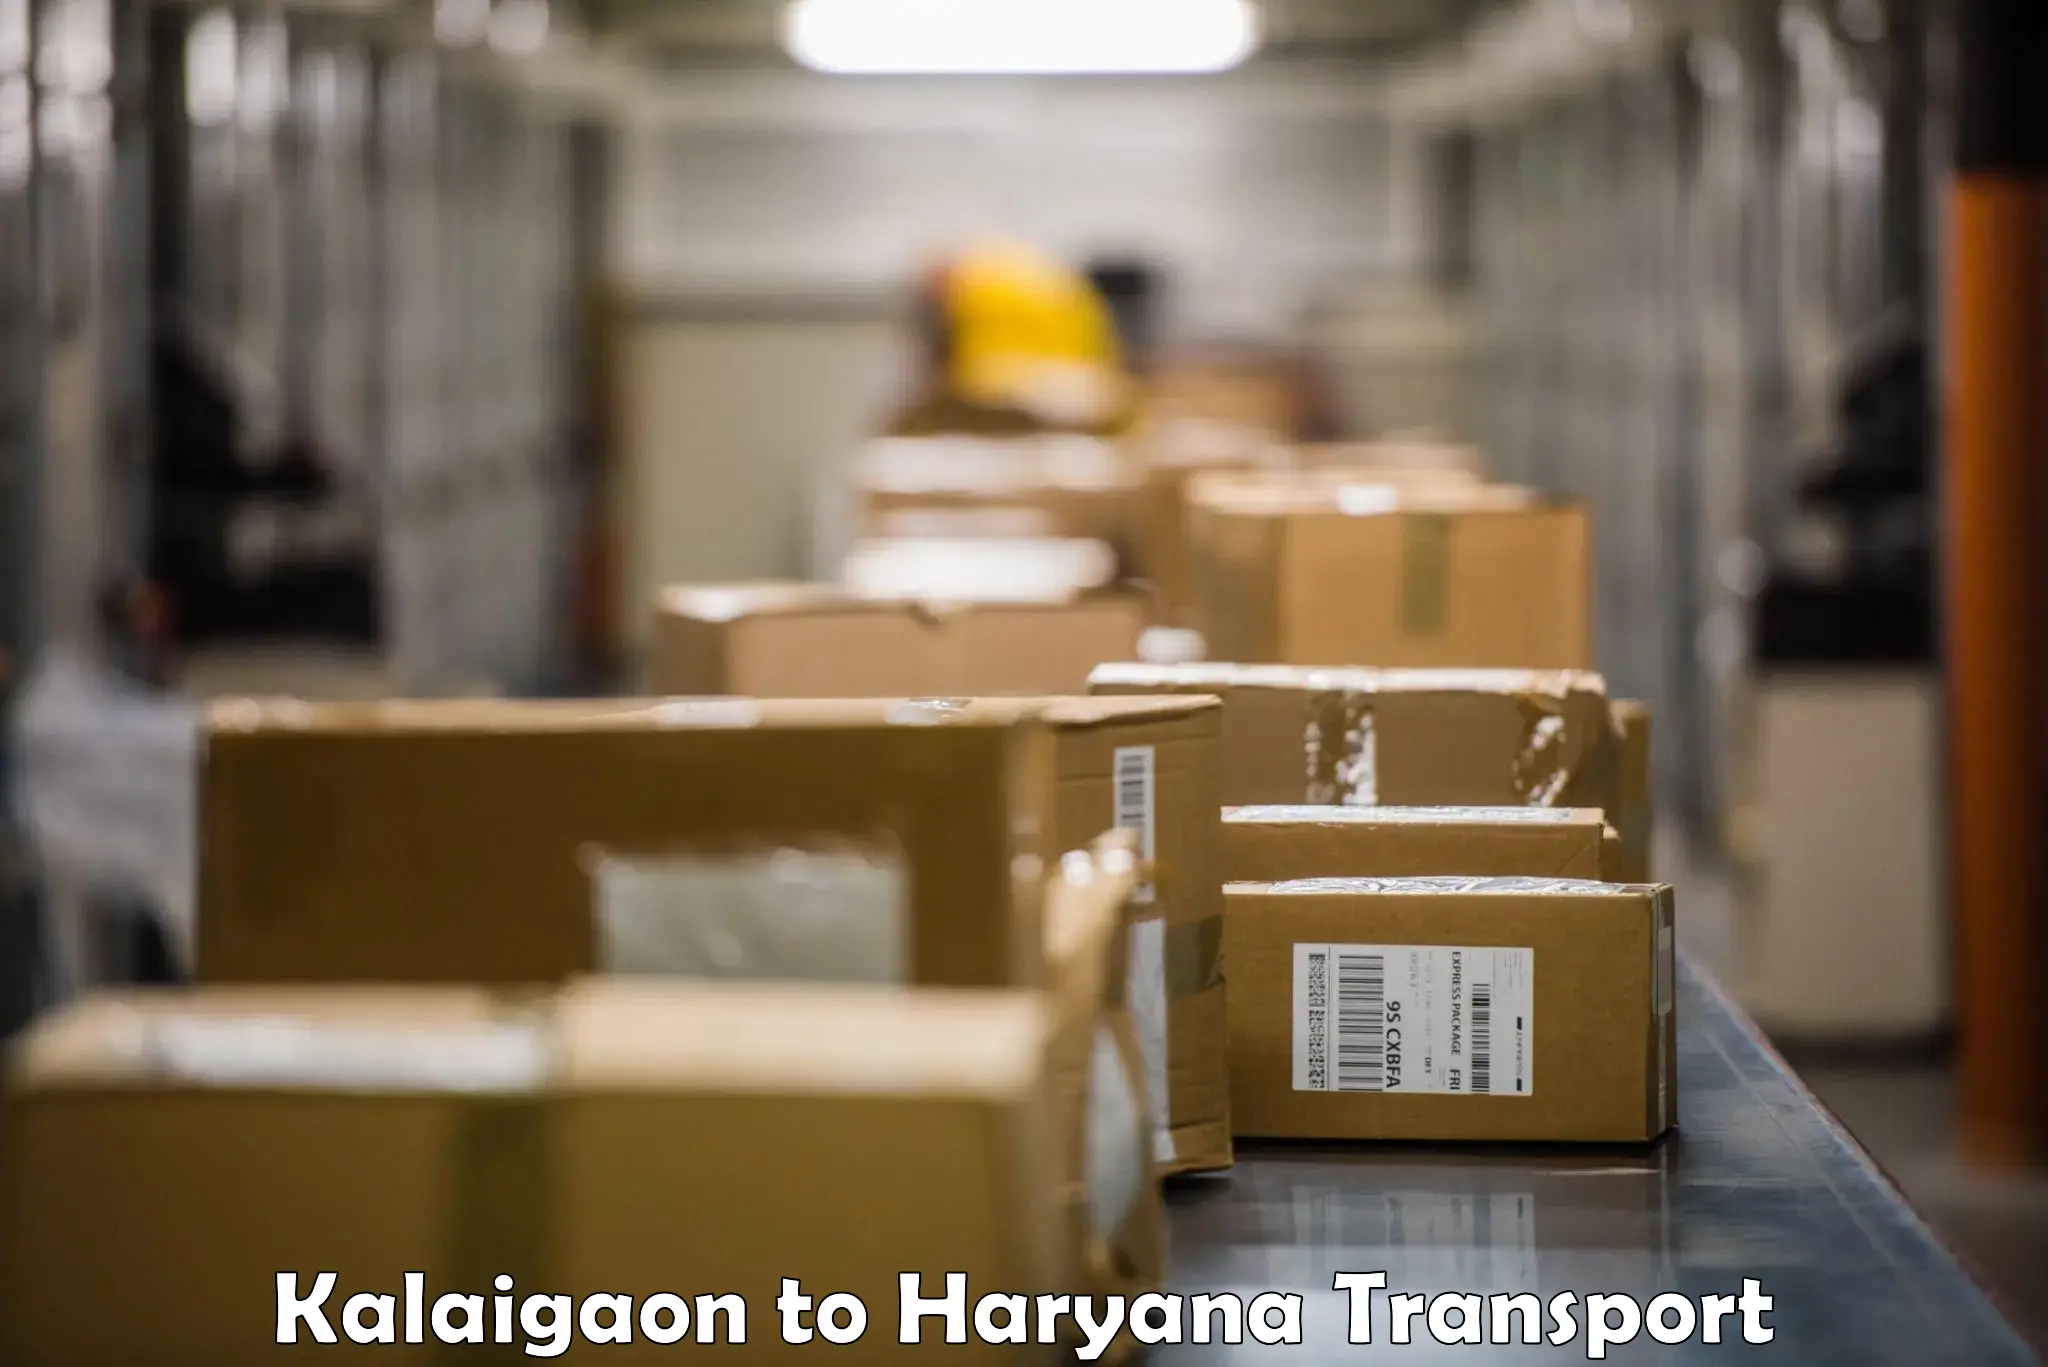 Logistics transportation services Kalaigaon to Bilaspur Haryana